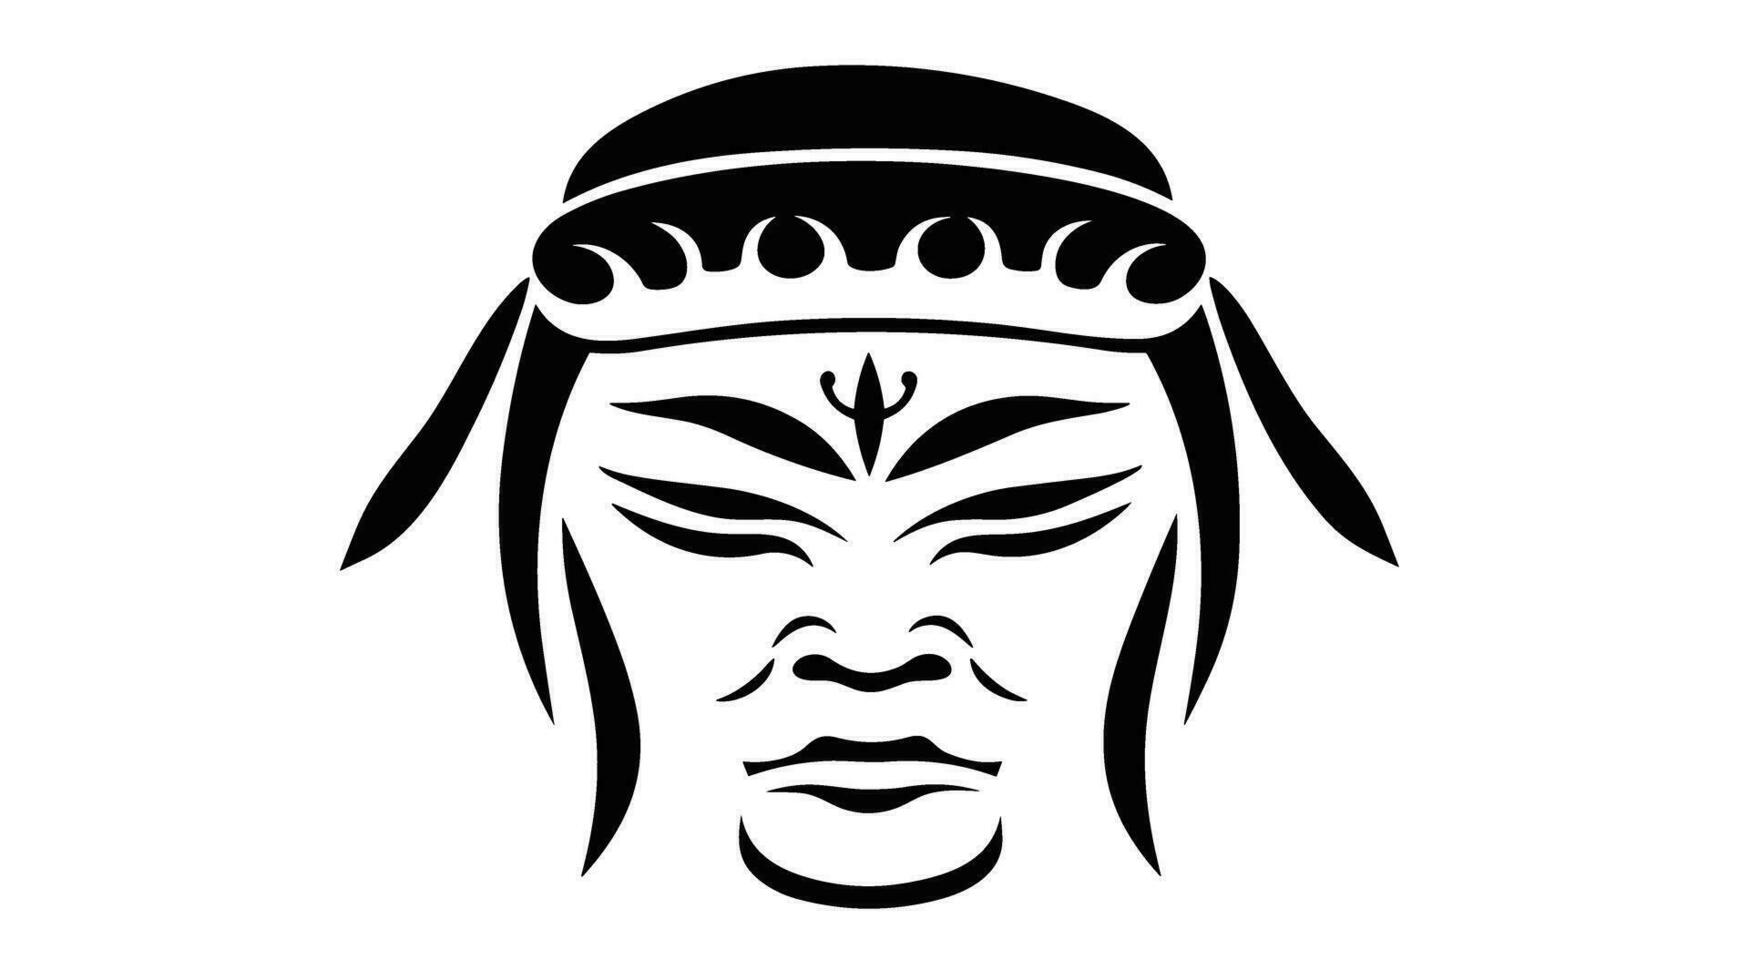 anda av de krigare utforska de gåtfull samuraj mask för ikoniska symbolism vektor